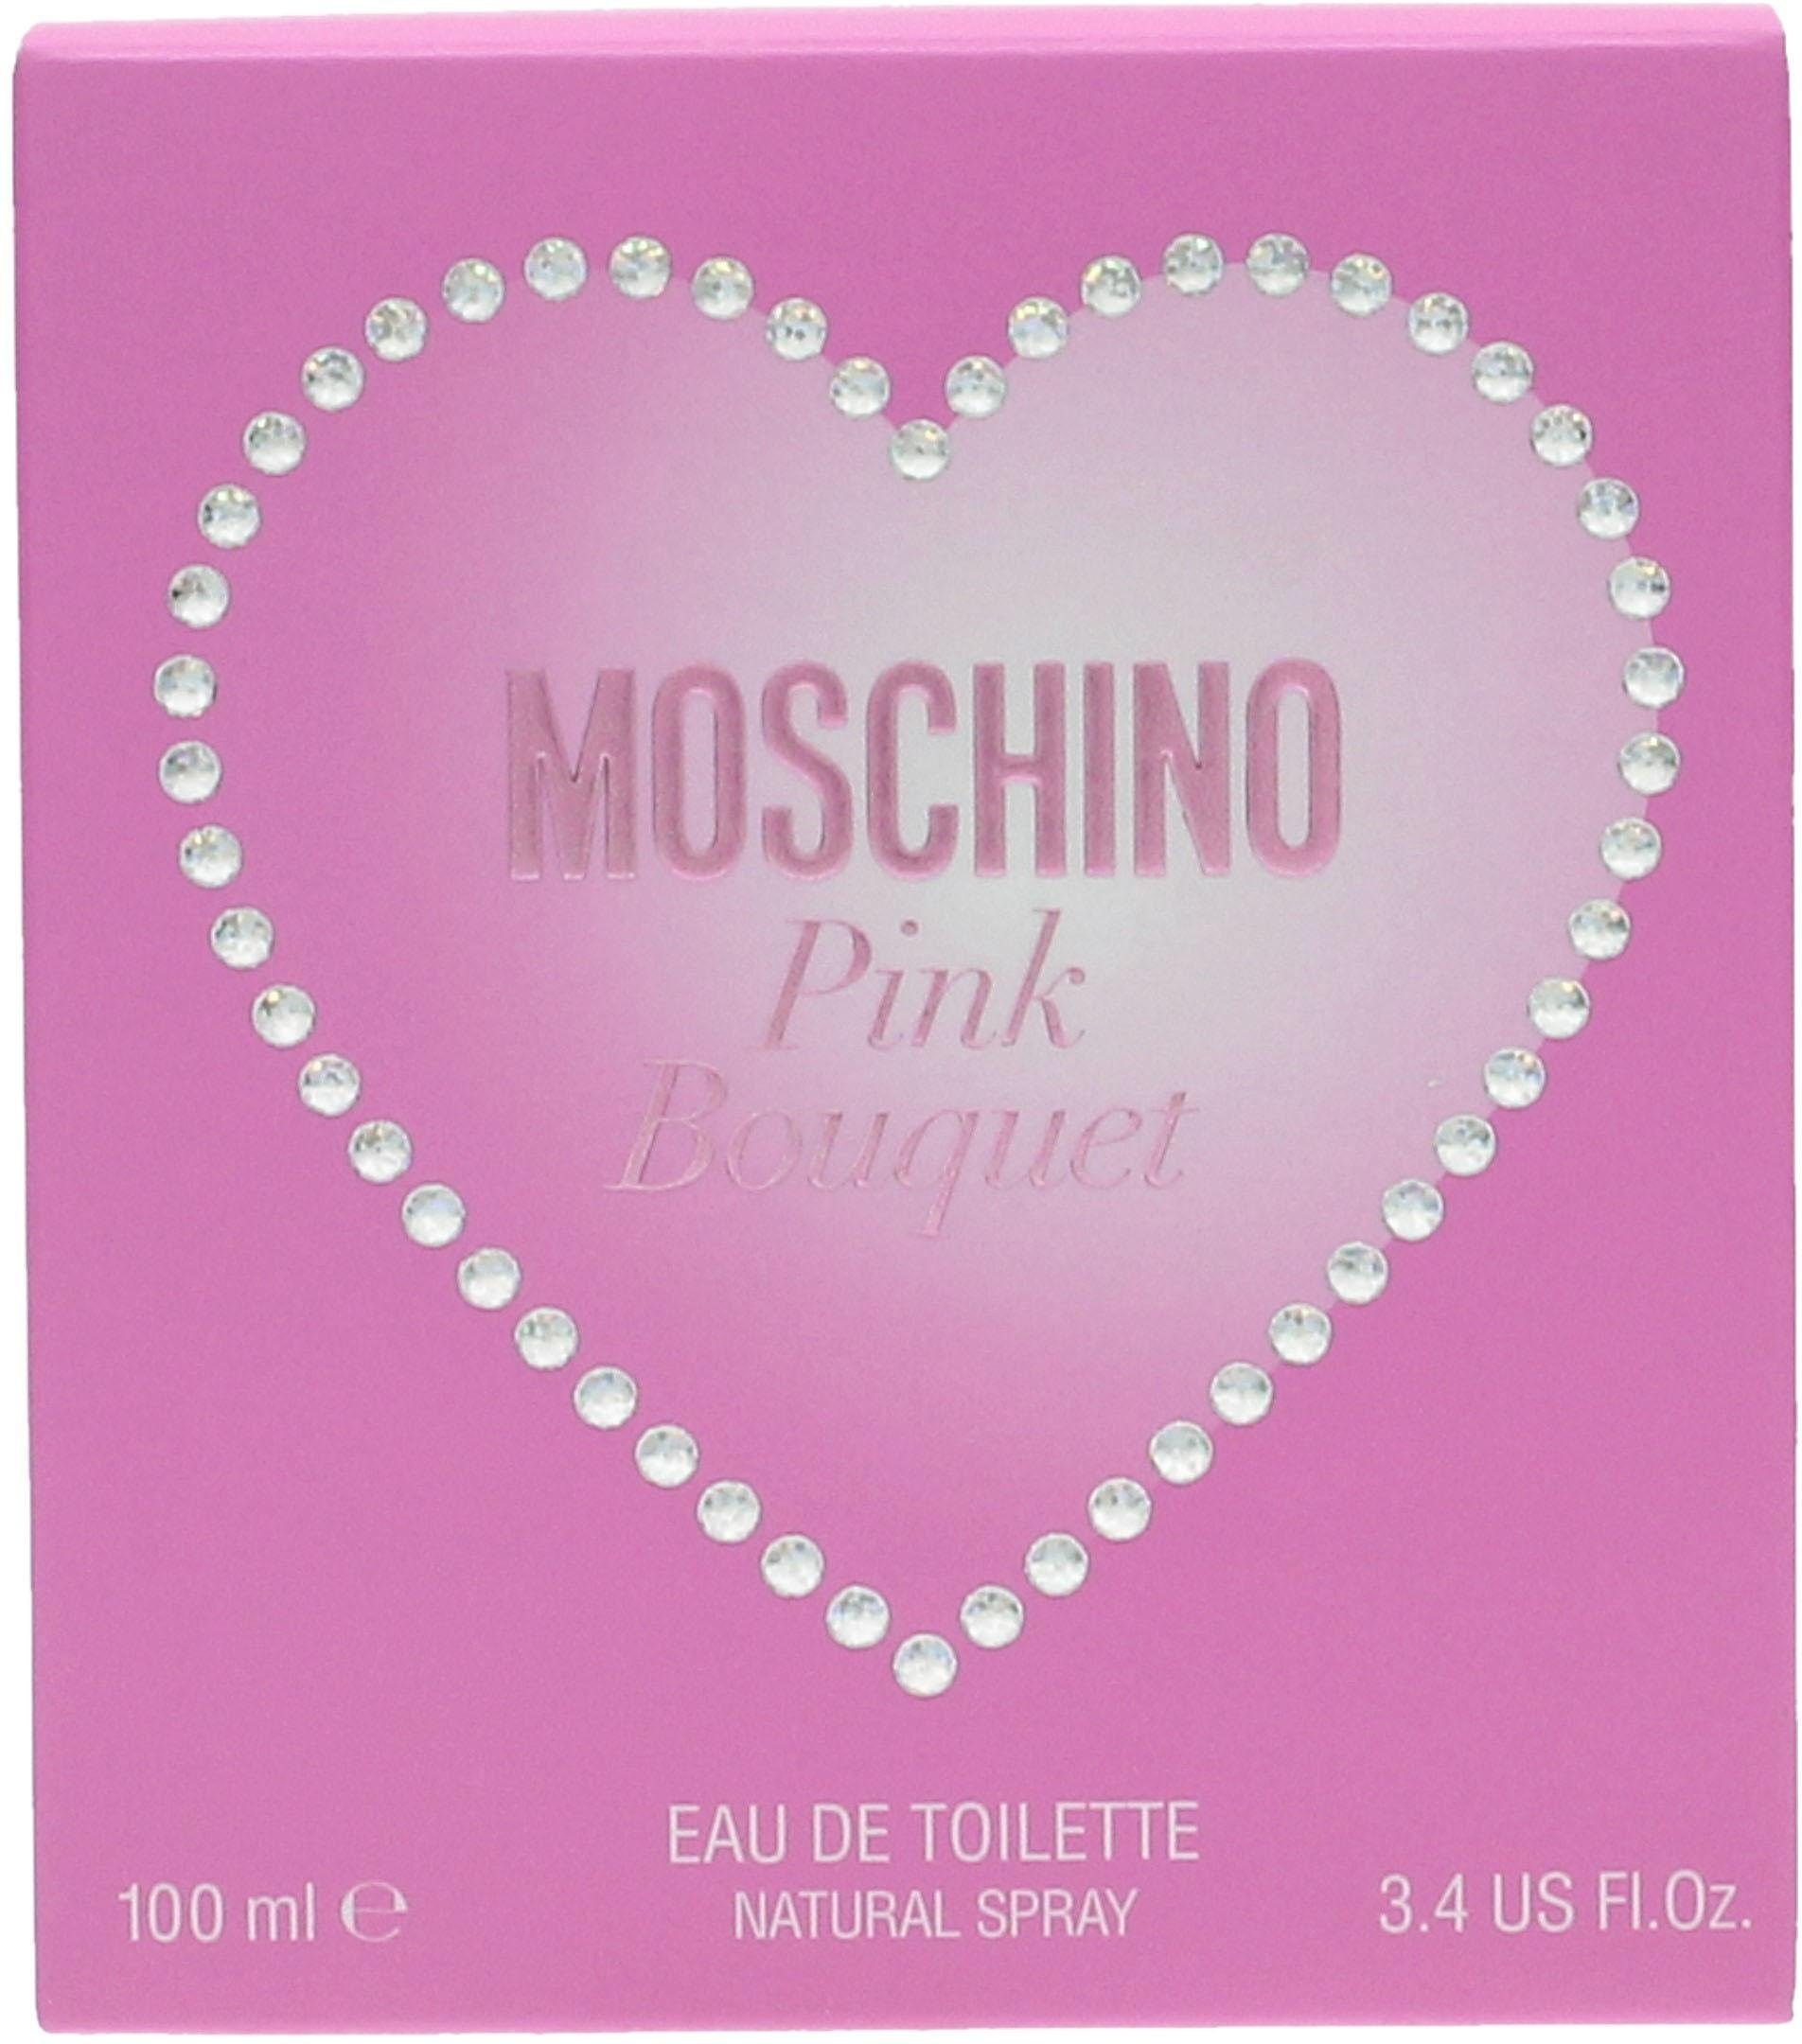 Pink Moschino Eau Toilette Bouquet de